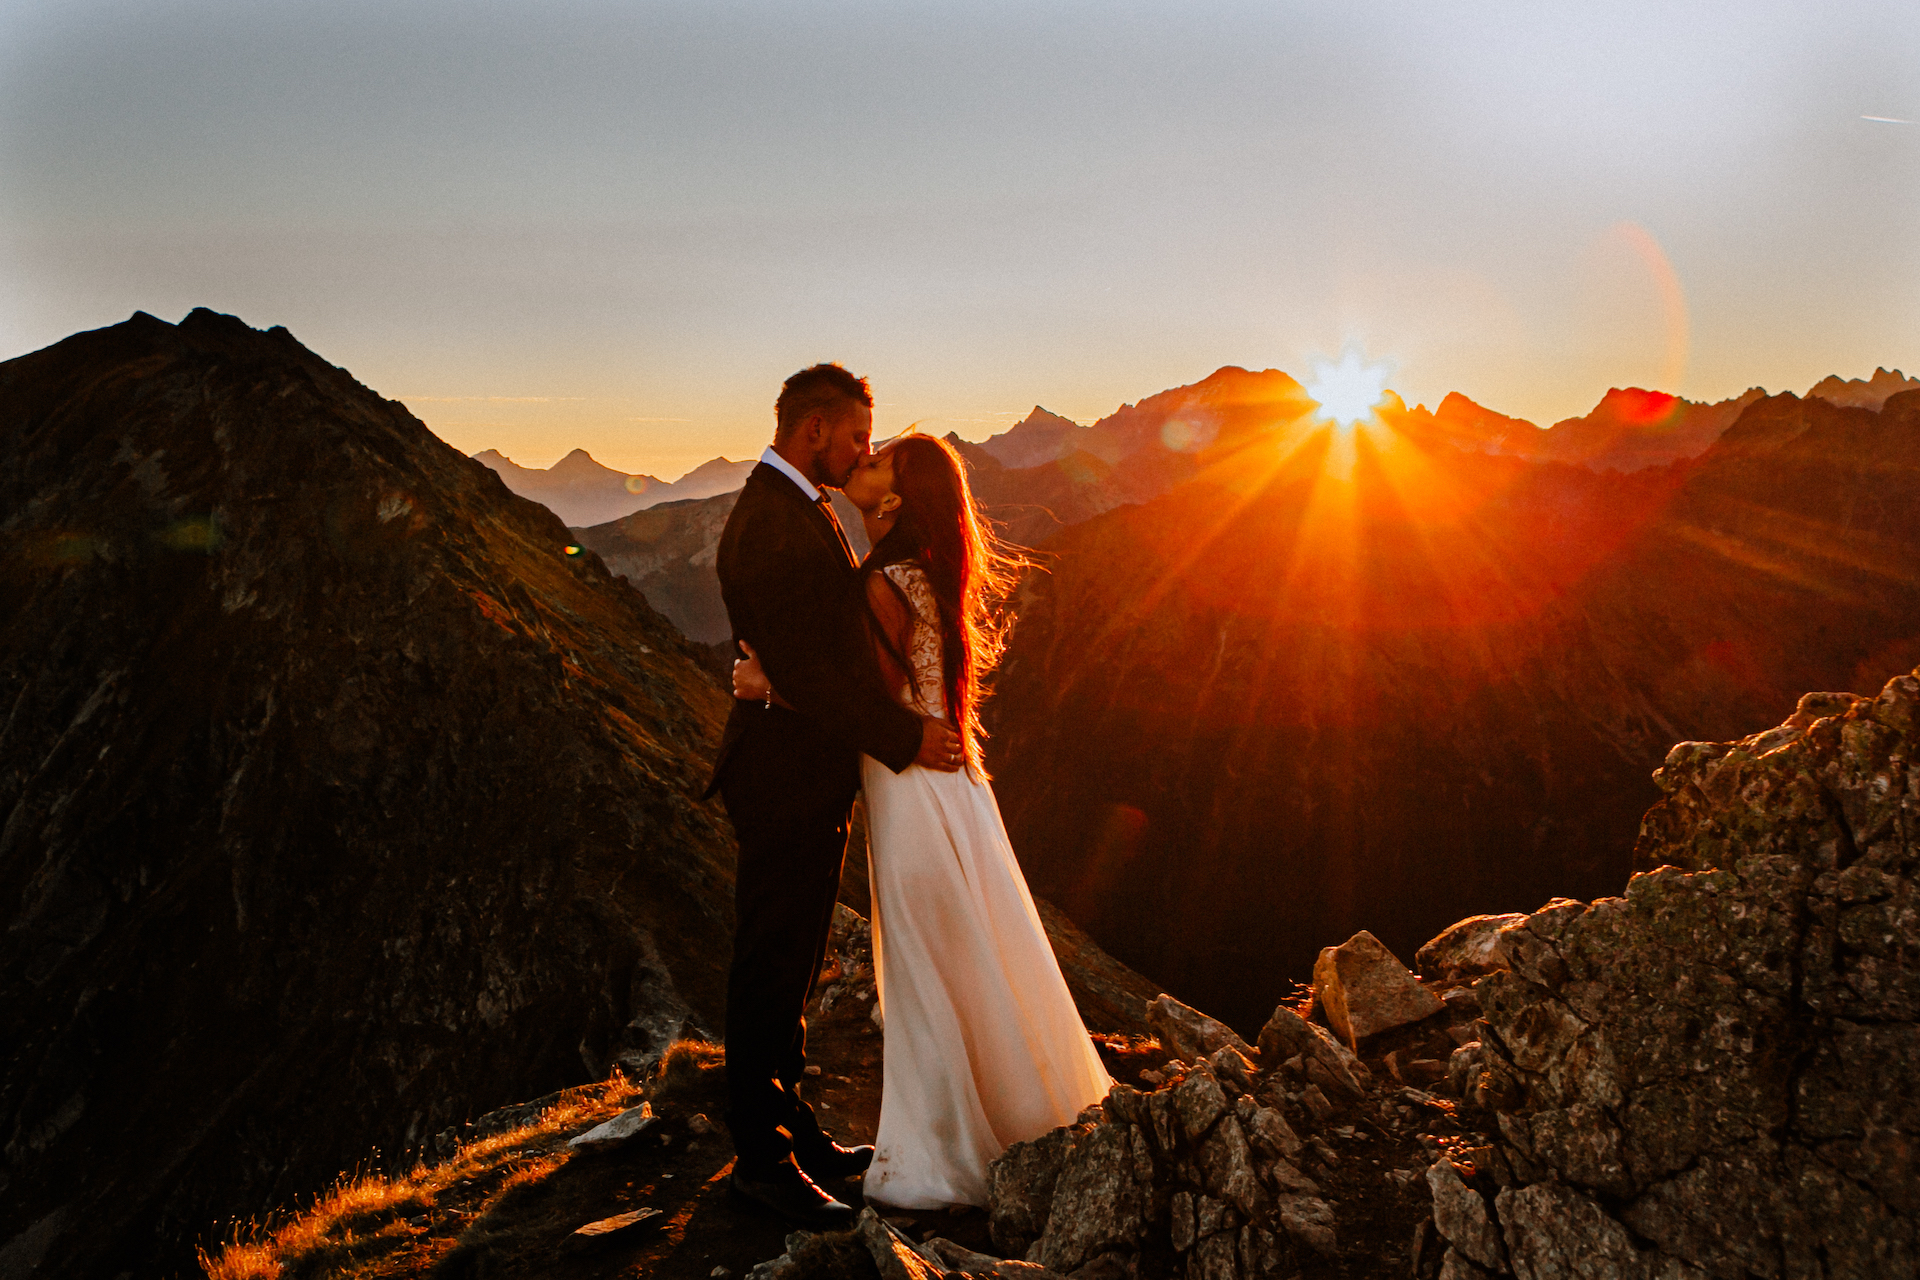 Fotografia ślubne - zdjęcie młodej pary w górach przy zachodzącym słońcu